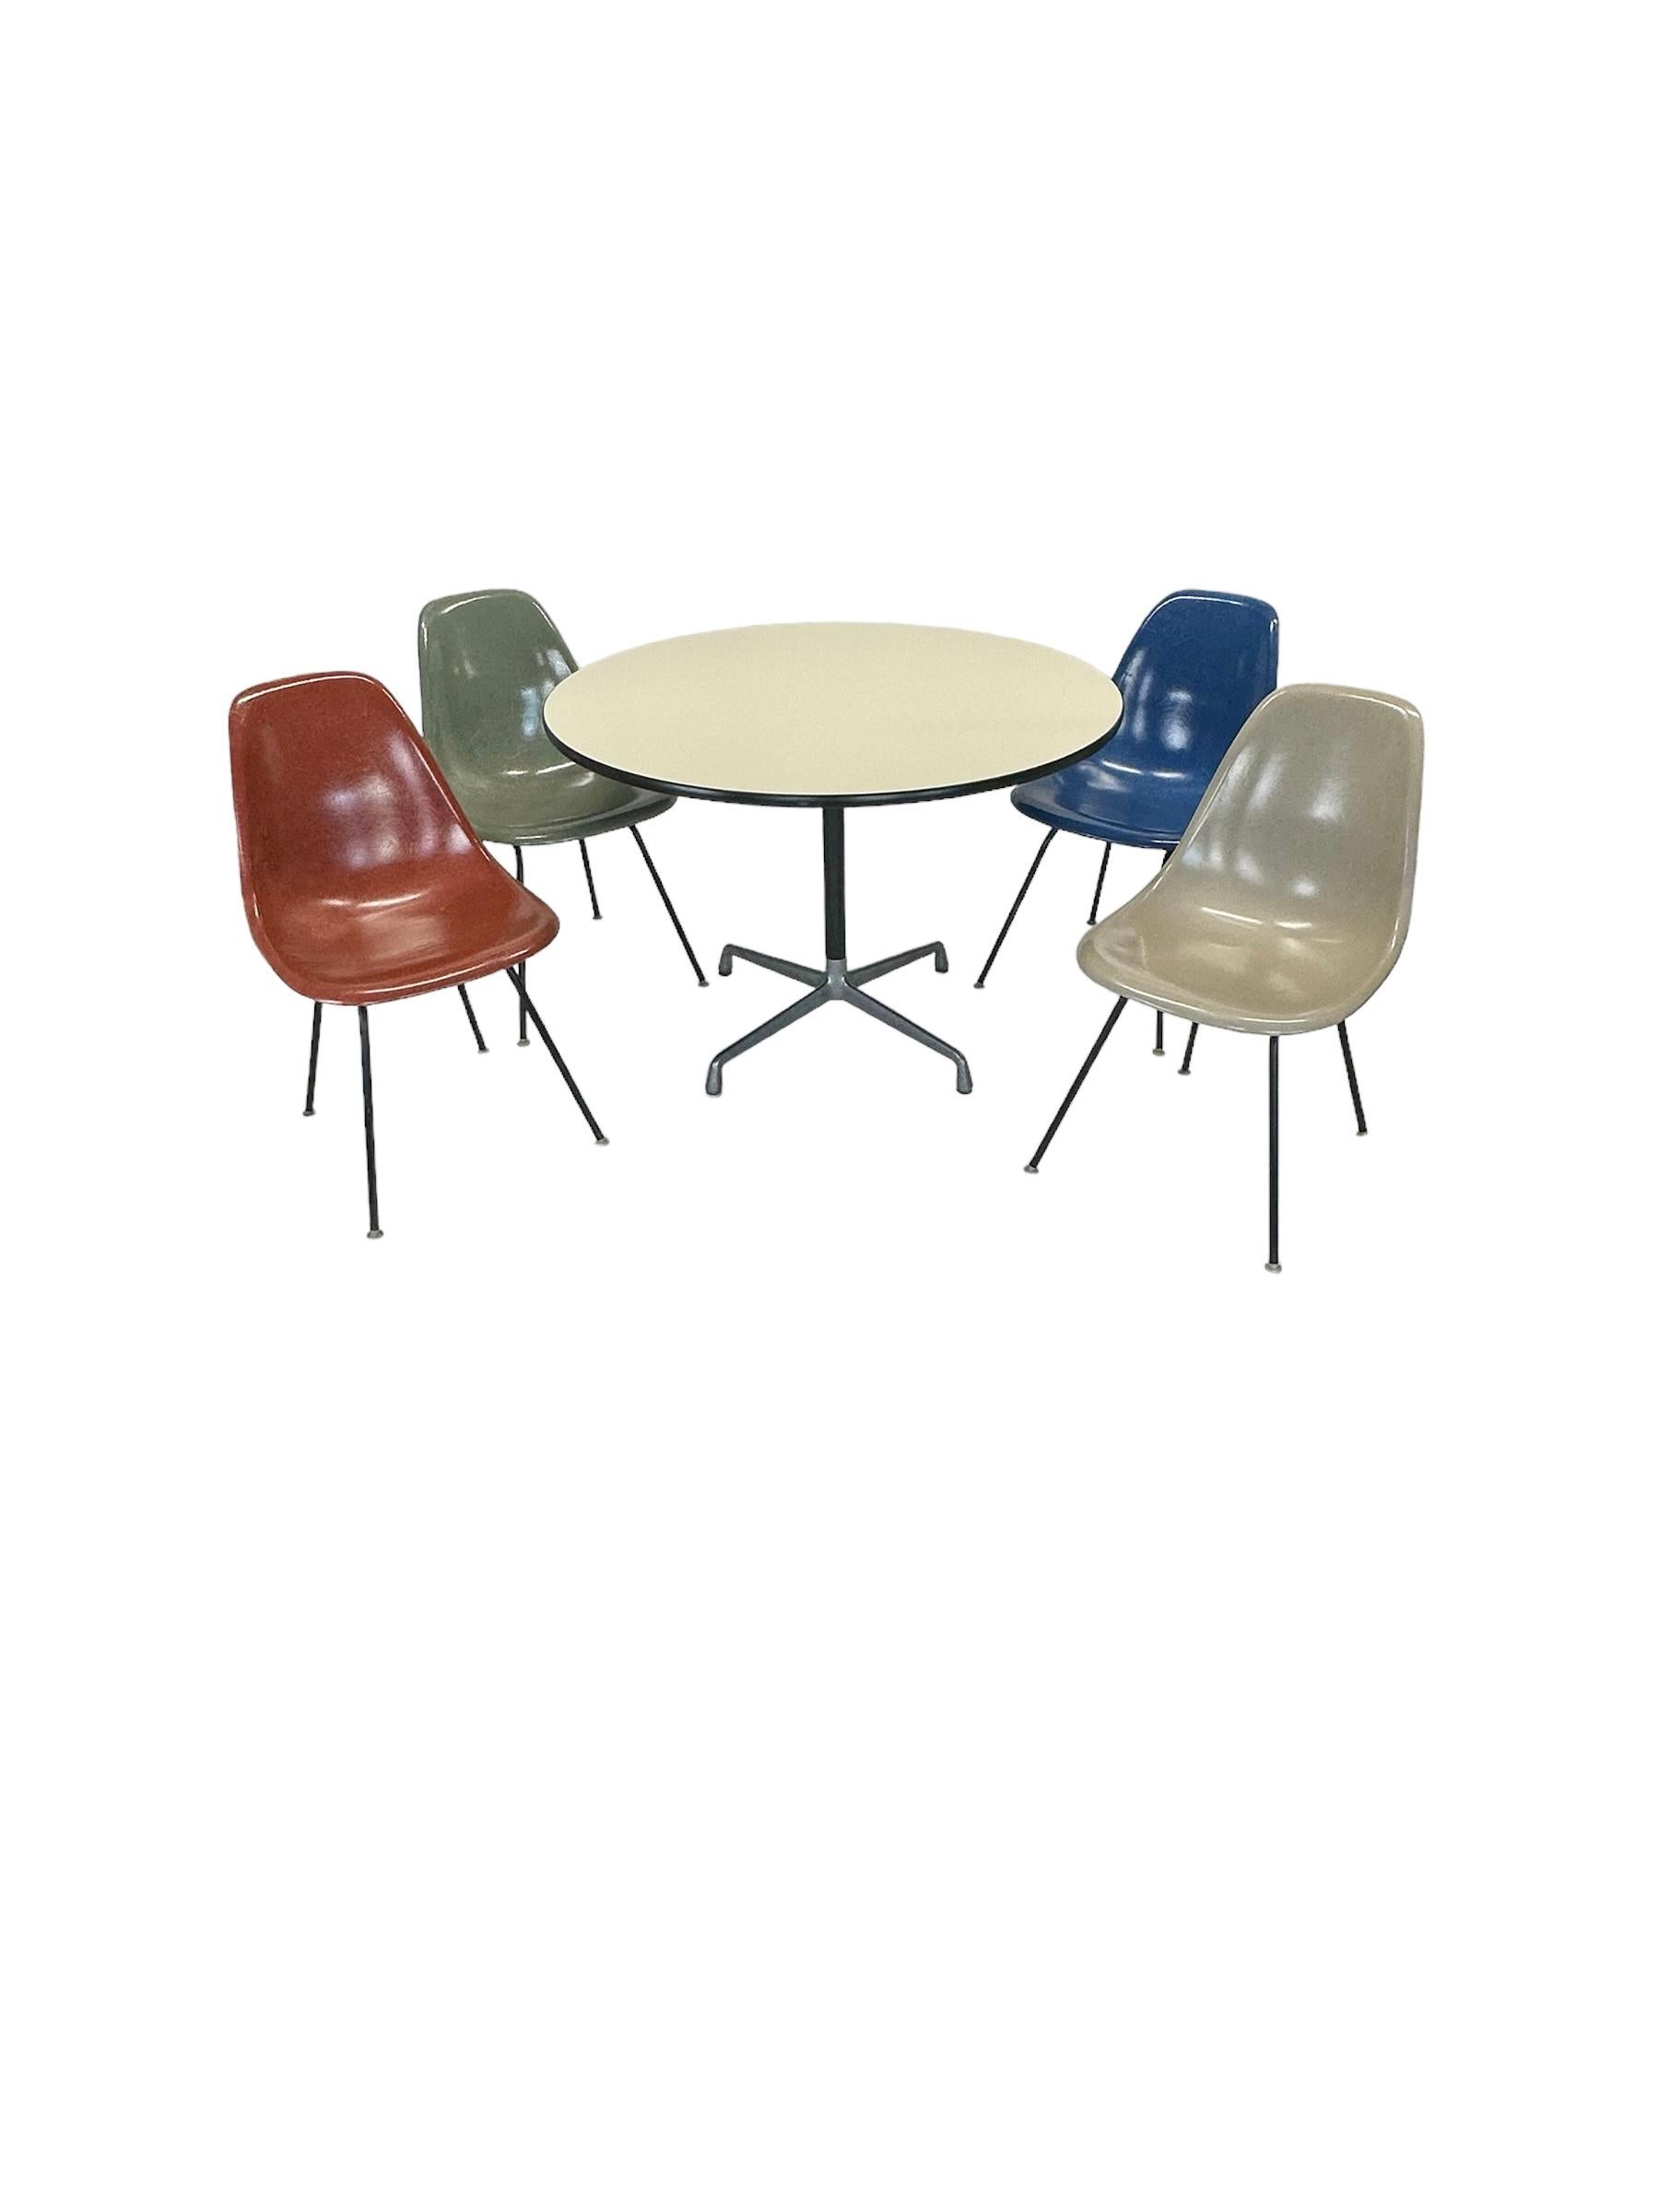 Original signiertes Herman Miller Eames Esstischset. Mit mehrfarbigen Schalenstühlen auf schwarzen H-Füßen. Alle selbstnivellierenden Stuhlgleiter aus Nylon sind intakt und können auf verschiedenen Oberflächen verwendet werden. Alle Stühle und